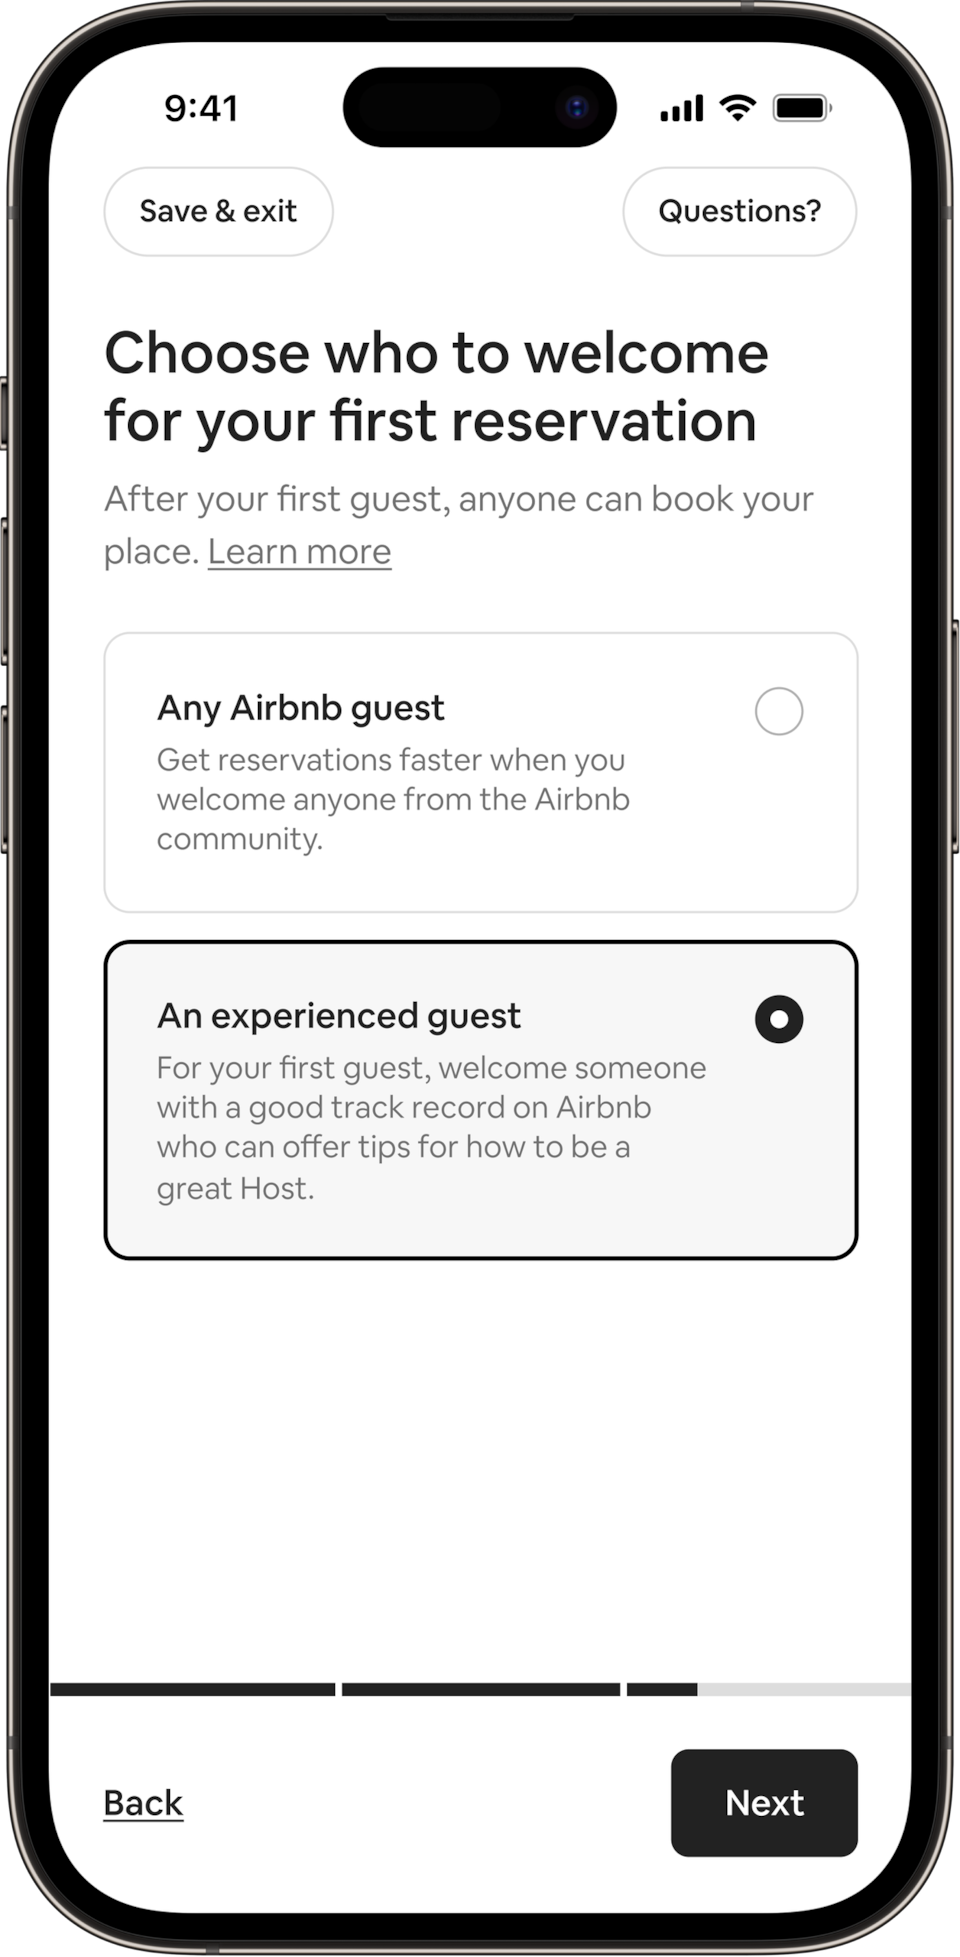 Một chiếc điện thoại hiển thị tiêu đề với nội dung: Chọn đối tượng khách để chào đón trong lần đón tiếp khách đầu tiên của bạn. Các Chủ nhà có thể chọn chào đón bất kỳ vị khách Airbnb nào hoặc họ có thể chọn chào đón khách có kinh nghiệm. Khách có kinh nghiệm đã được chọn.